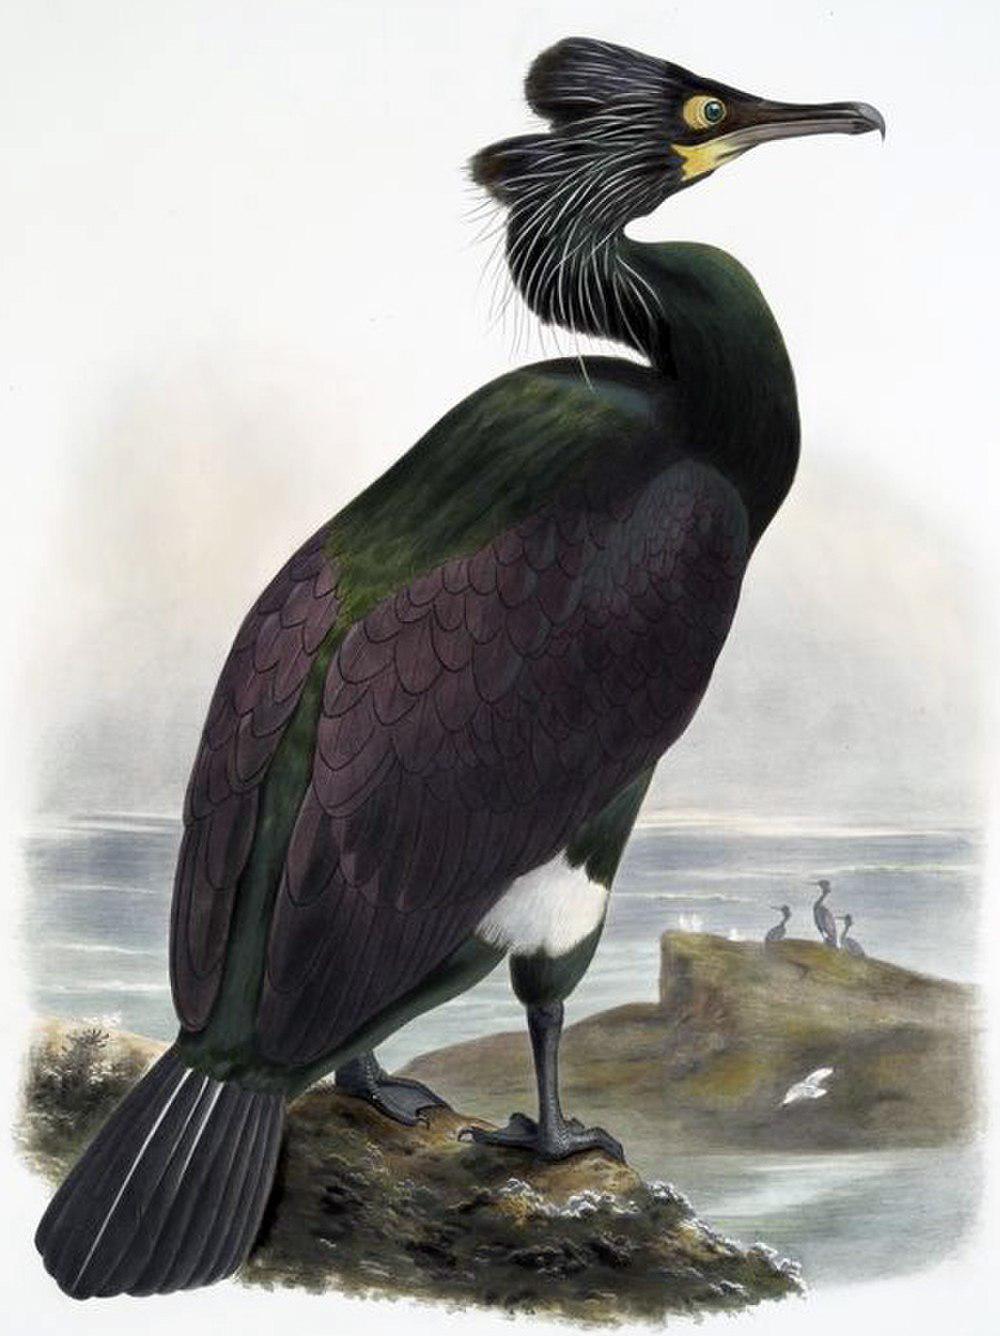 白令鸬 / Pallas\'s Cormorant / Phalacrocorax perspicillatus